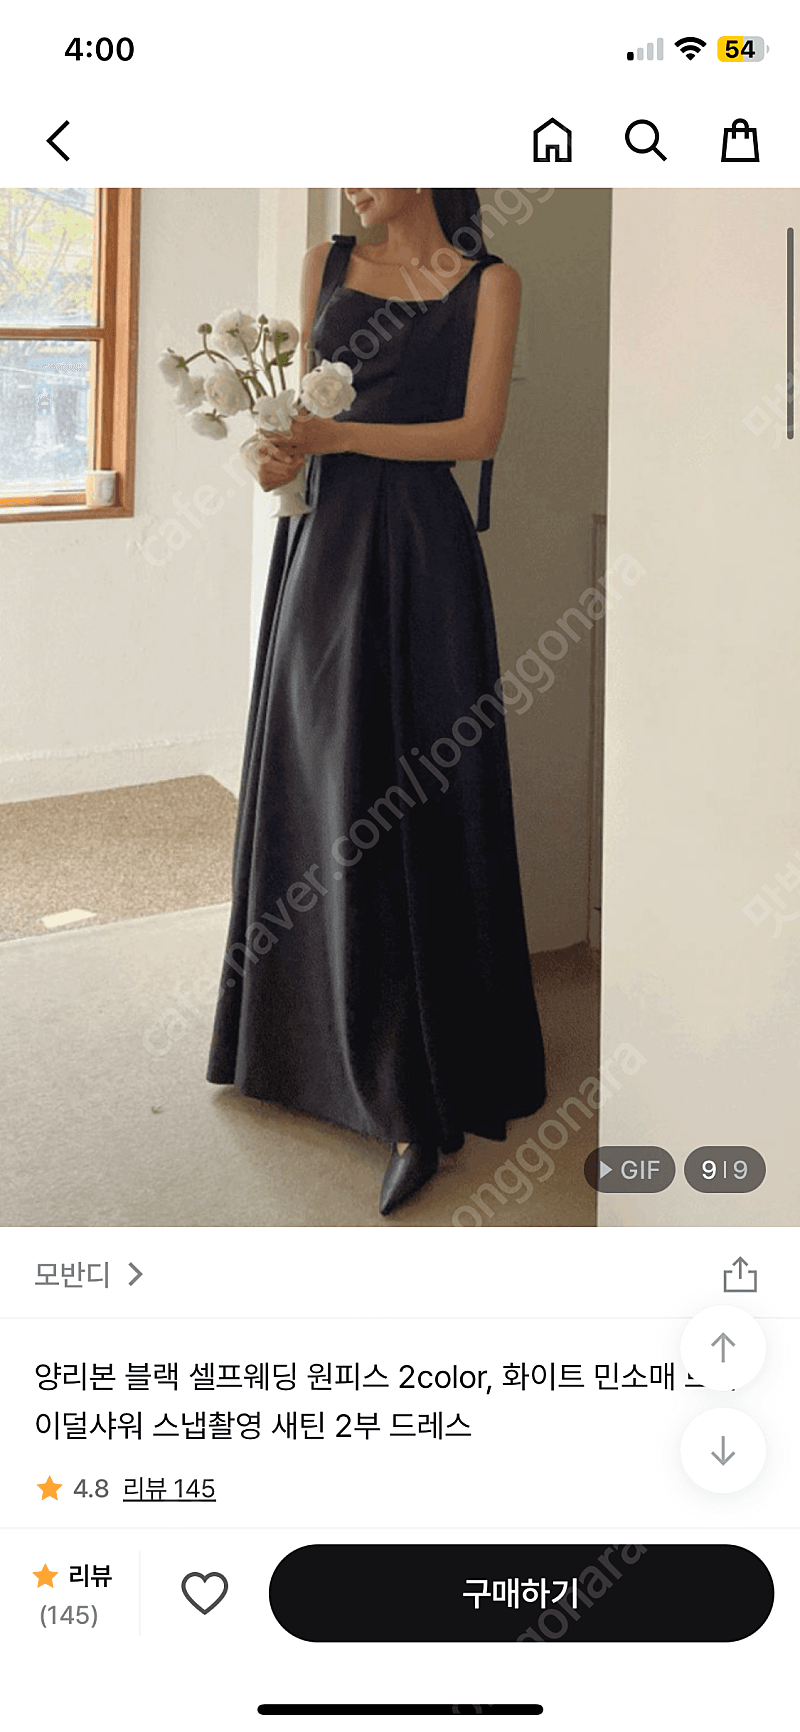 양리본 블랙 셀프웨딩 원피스 2color, 화이트 민소매 브라이덜샤워 스냅촬영 새틴 2부 드레스